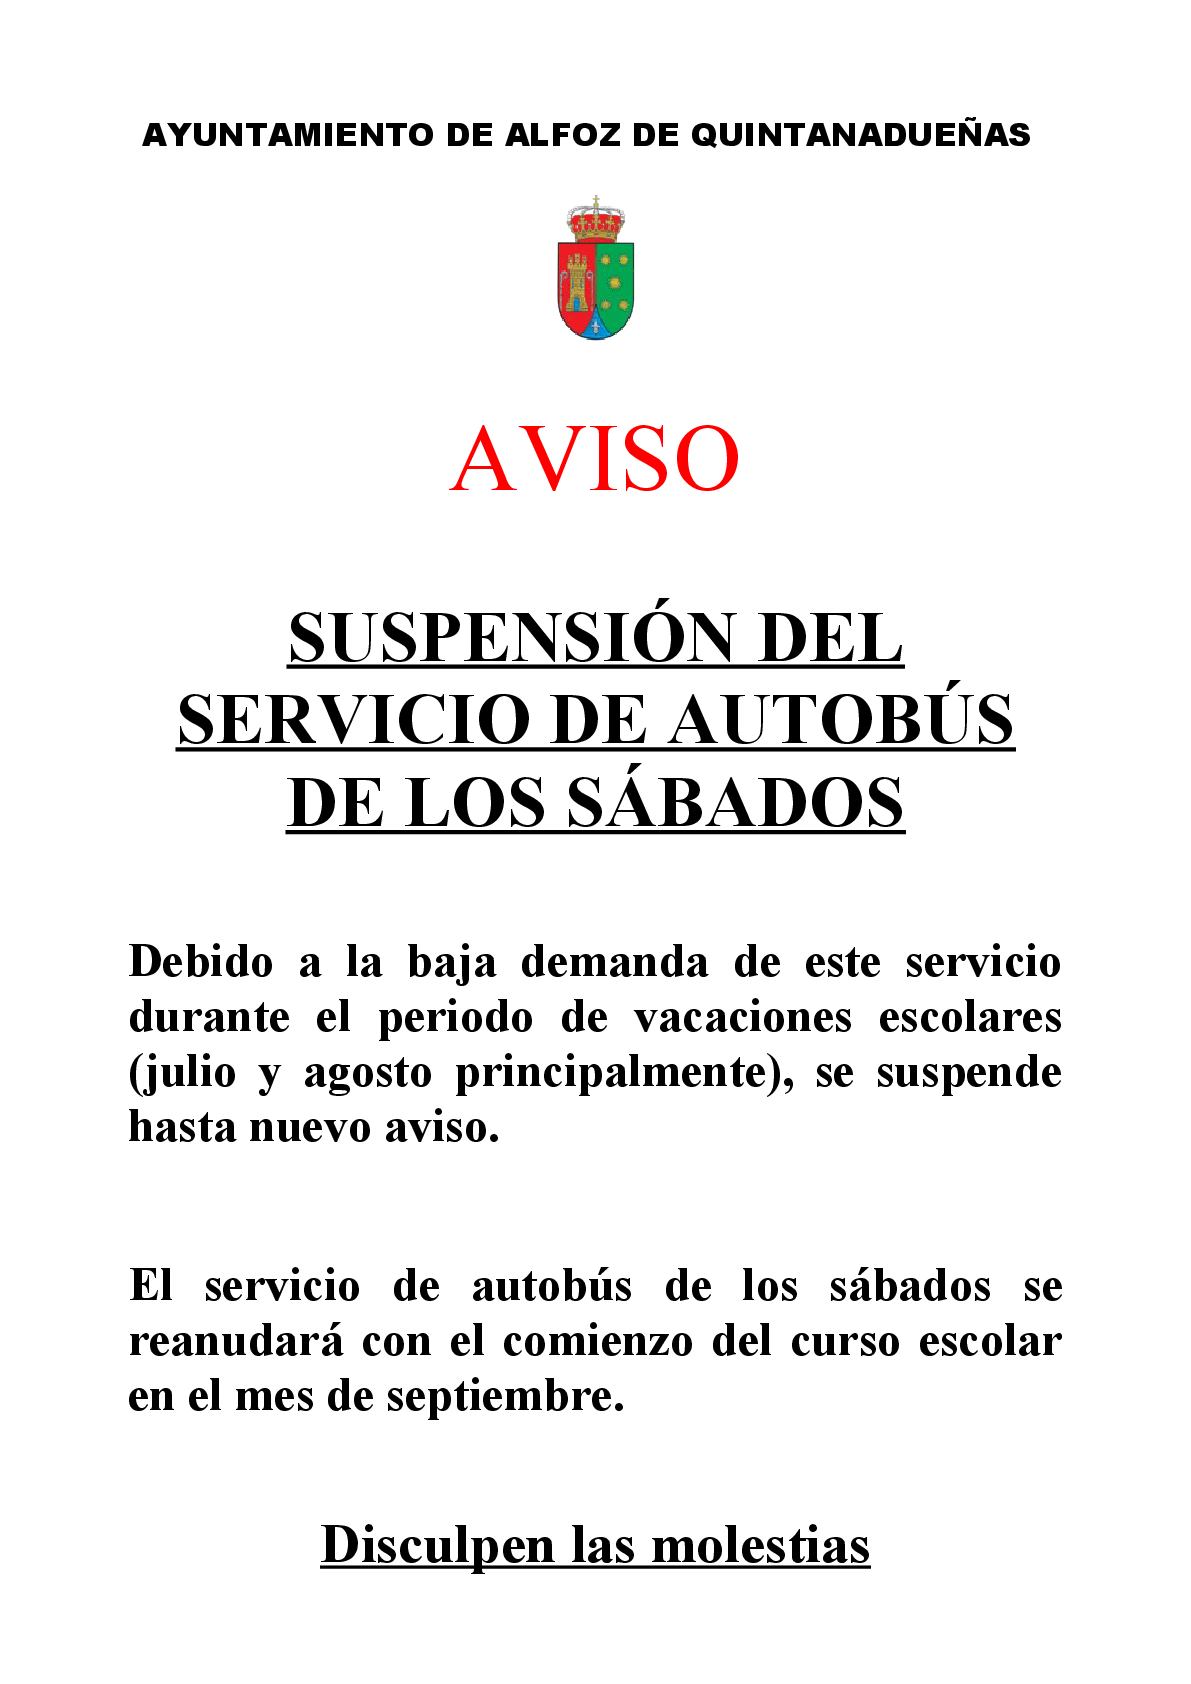 Aviso suspensión temporal servicio del autobús de los sábados